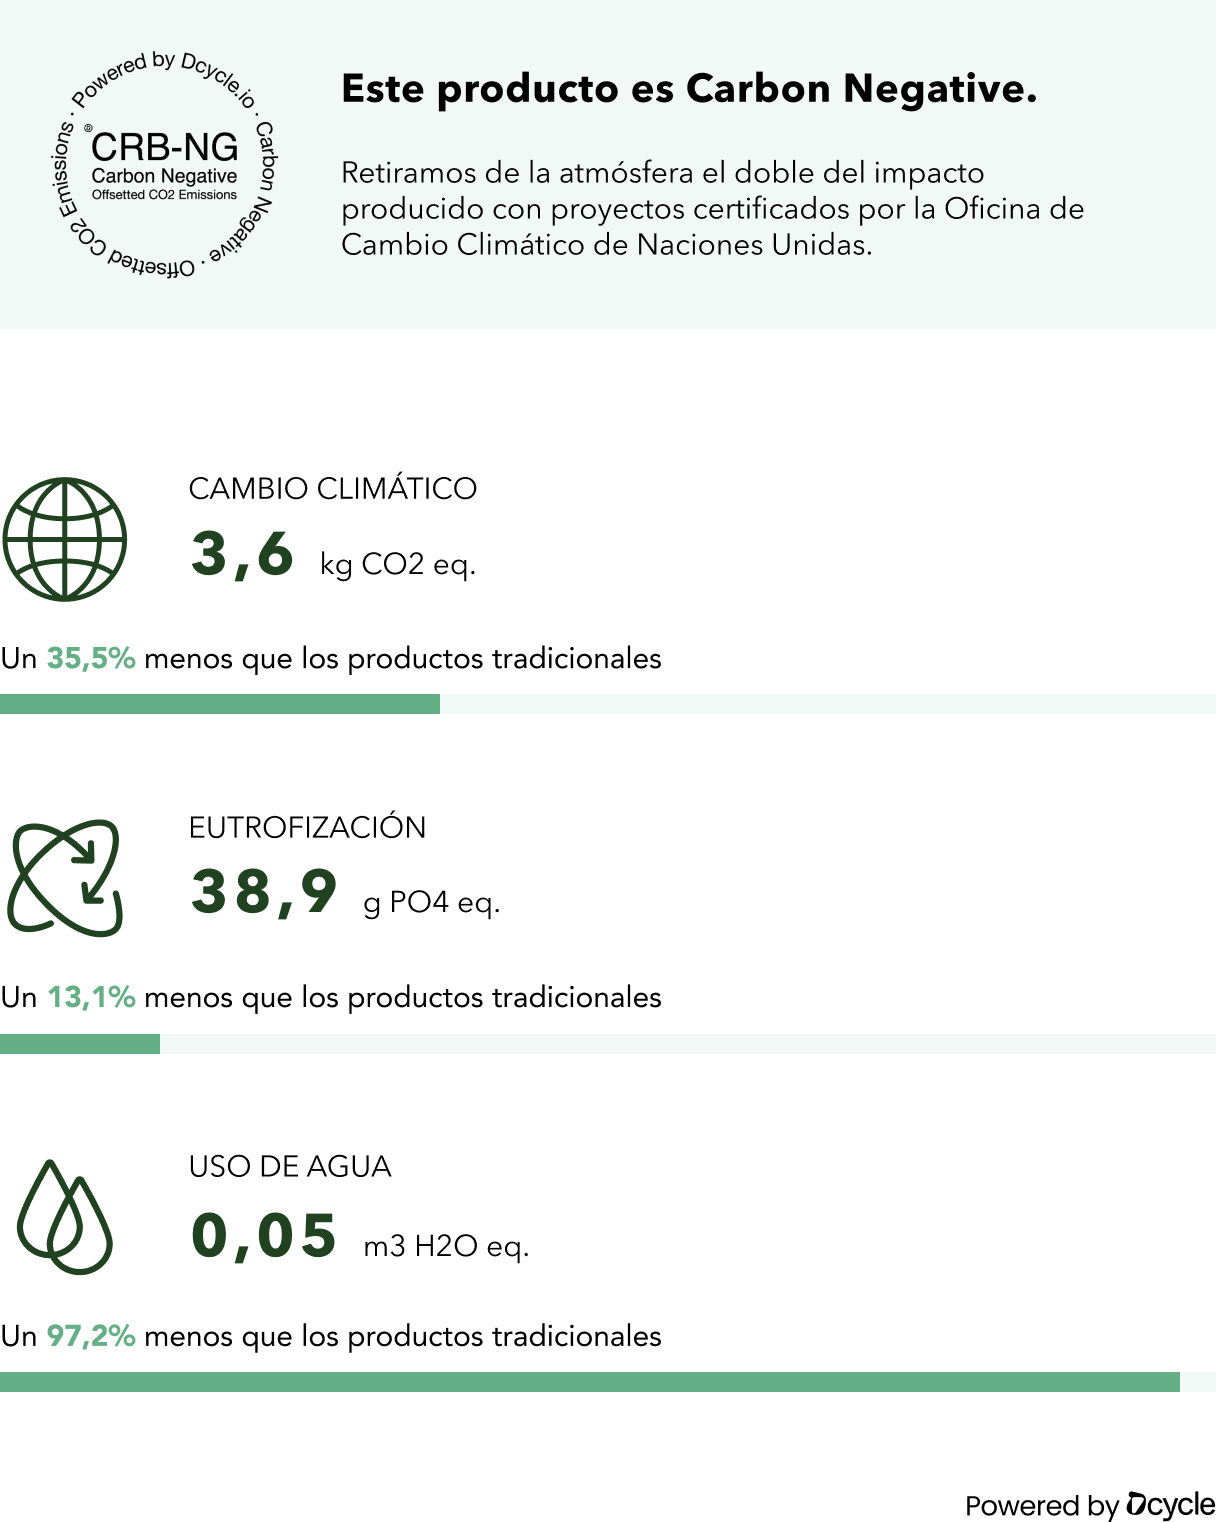 Sudadera · 85% algodón orgánico, 15% poliéster reciclado · Grey Heather [EDICIÓN LIMITADA] (6789061673037)